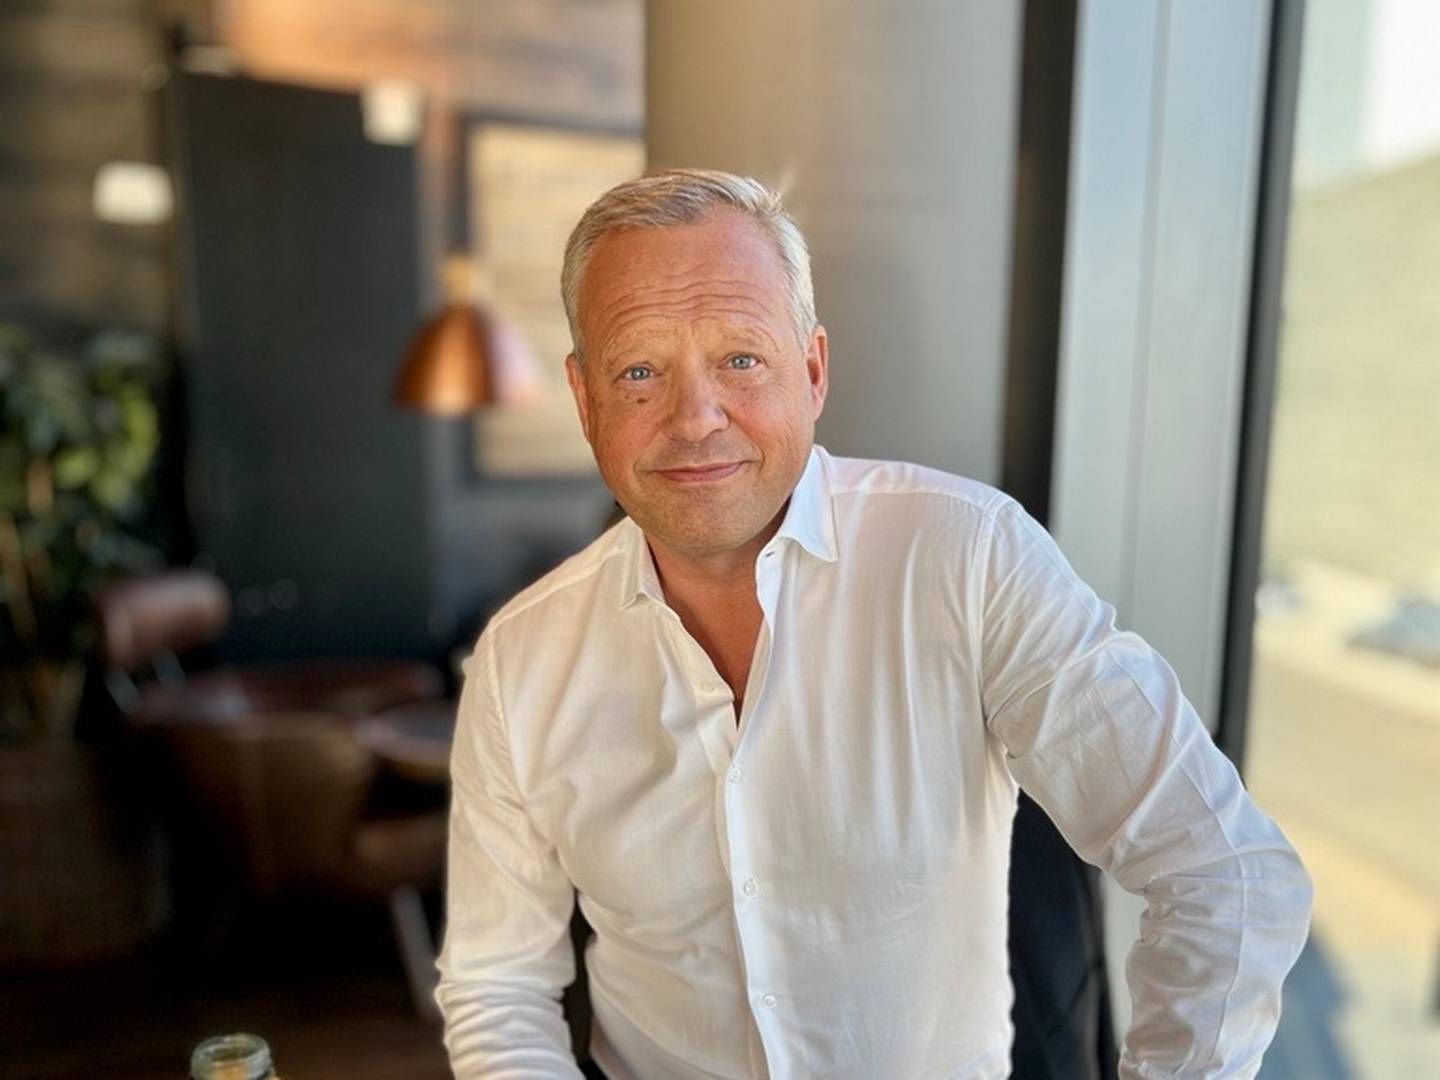 ÅPEN OM MENTALE UTFORDRINGER: Stig L. Bech har vært åpen om sin mentale helse. AdvokatWatch møtte han til en prat på Espresso House på Aker Brygge i Oslo. | Foto: Johannes Enli Kalleberg / AdvokatWatch